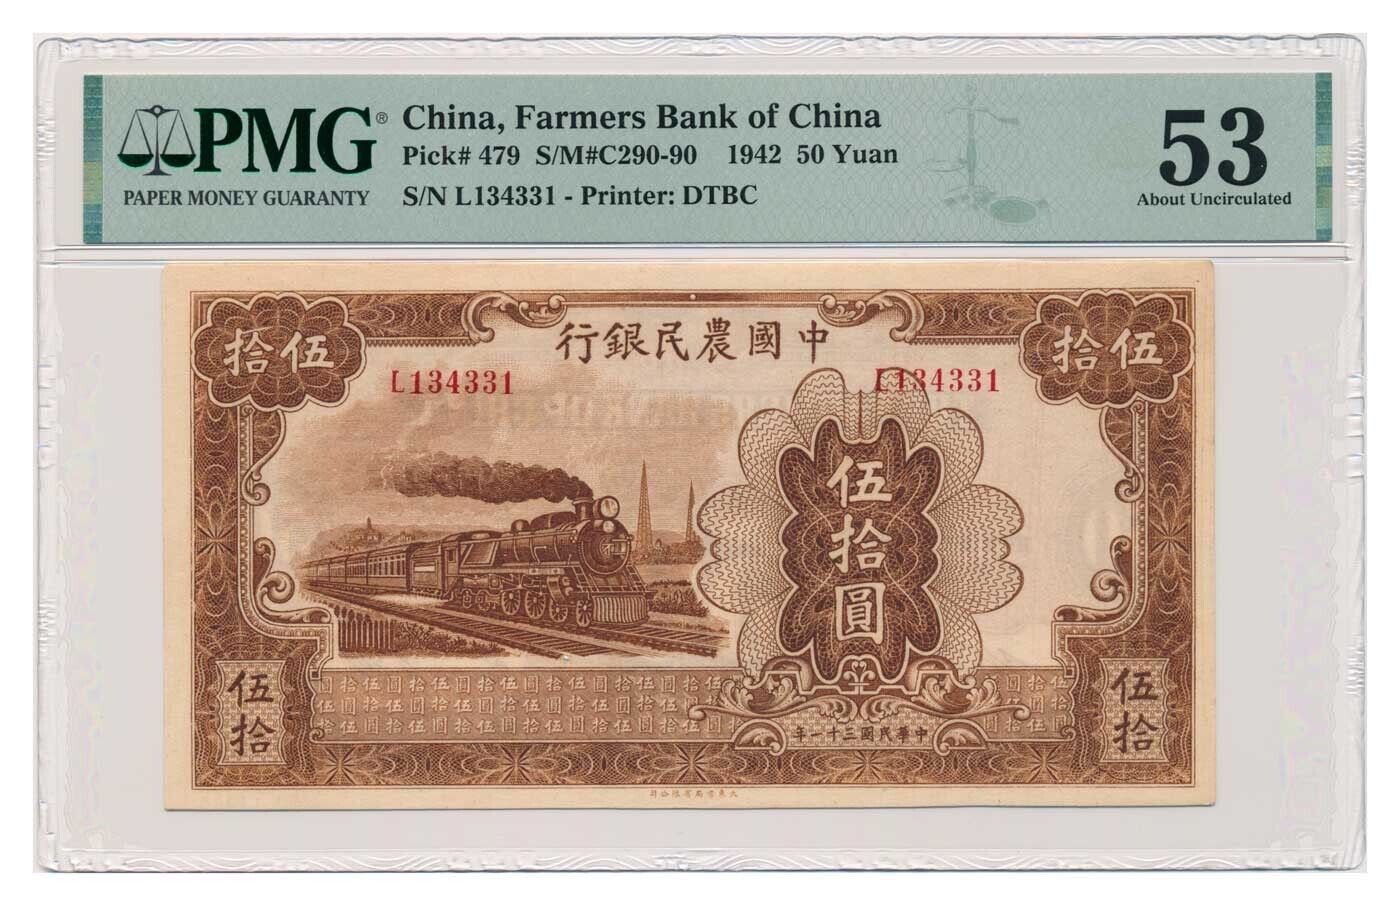 CHINA (FARMERS BANK OF CHINA) banknote 50 Yuan 1942 PMG grade AU 53